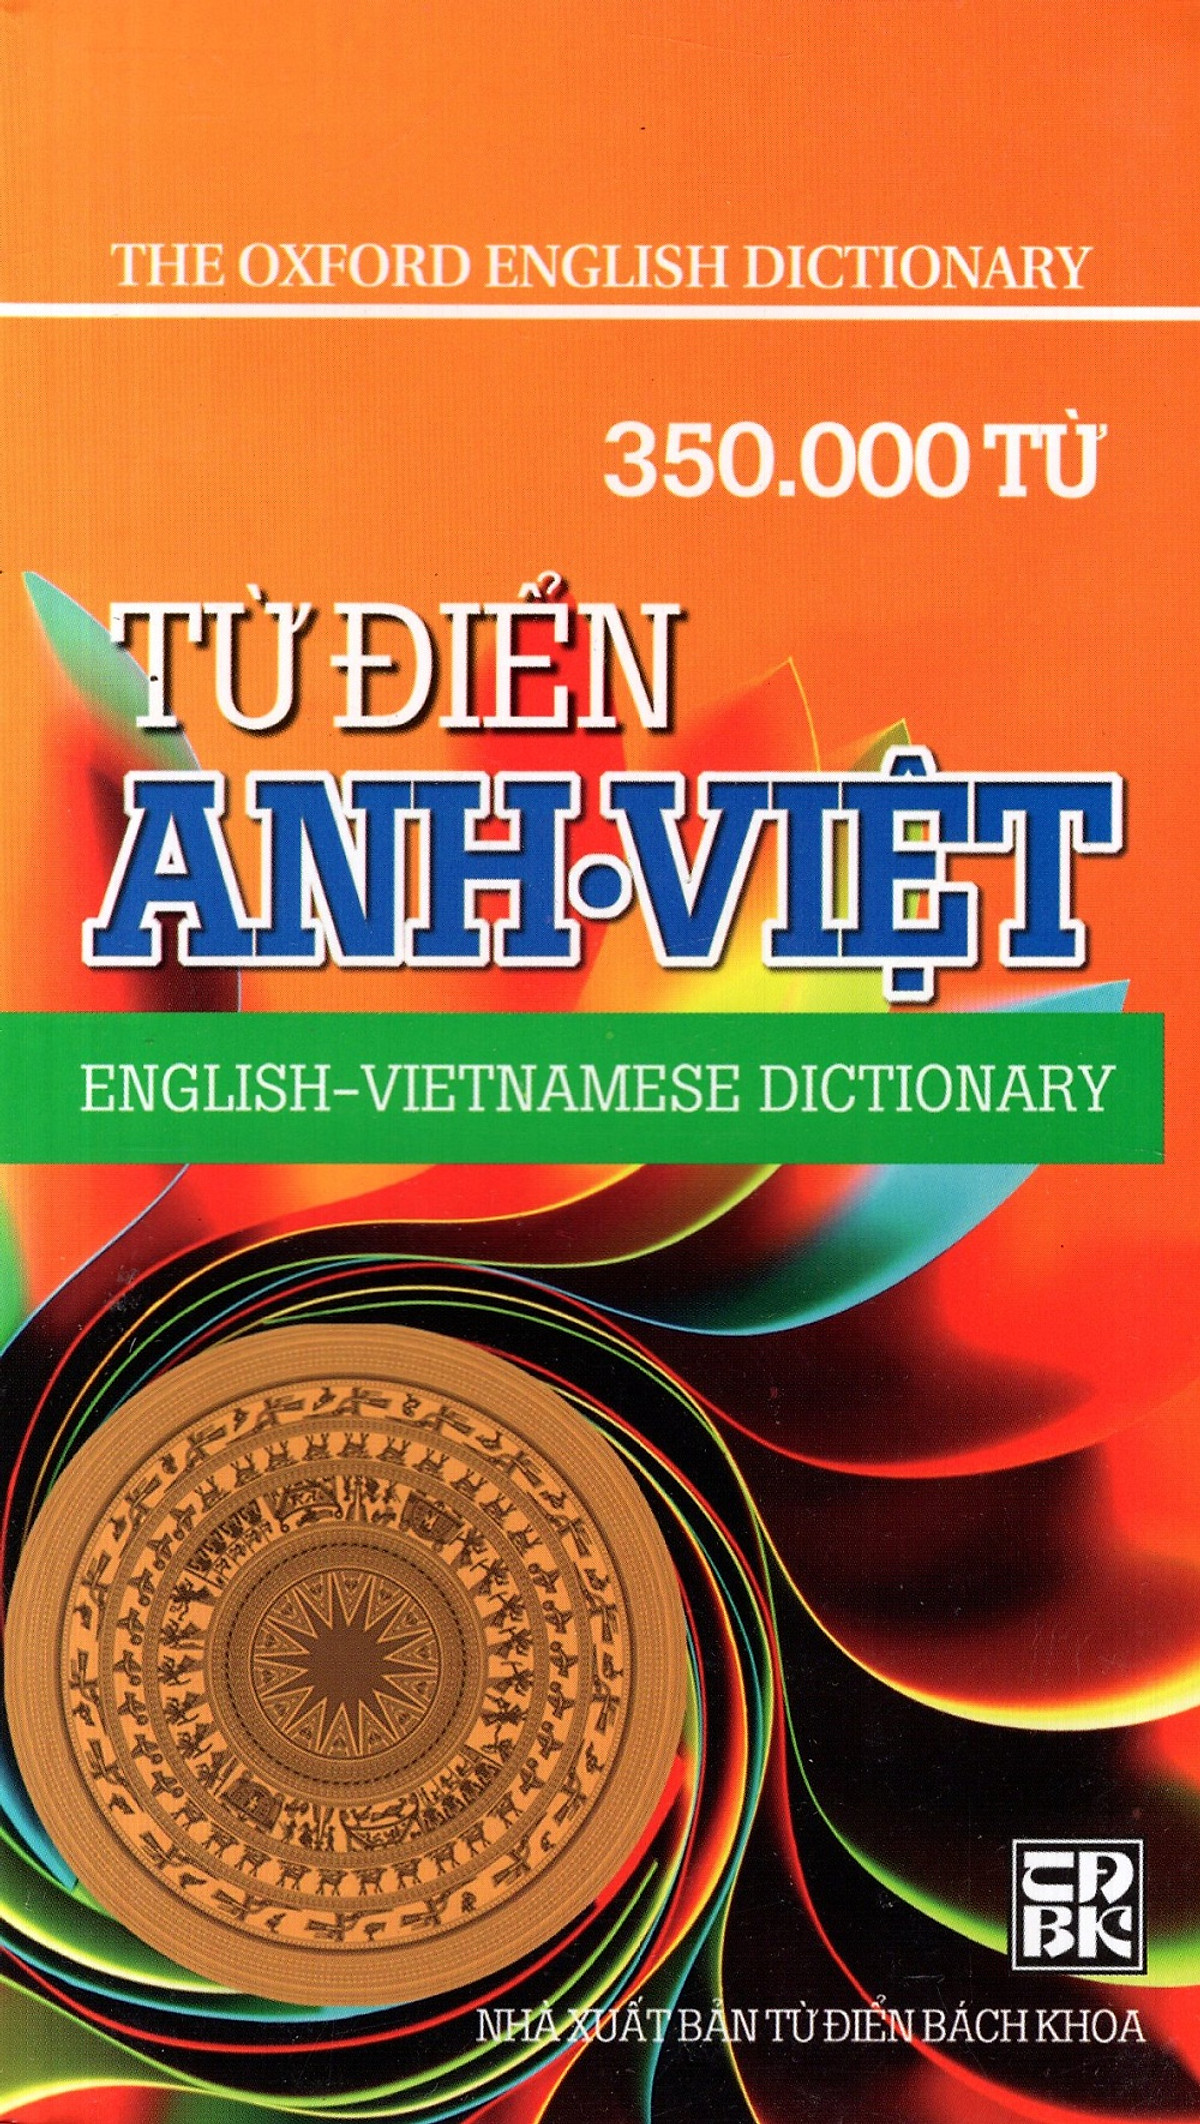 Từ Điển Anh - Việt (350.000 Từ) - Sách Bỏ Túi